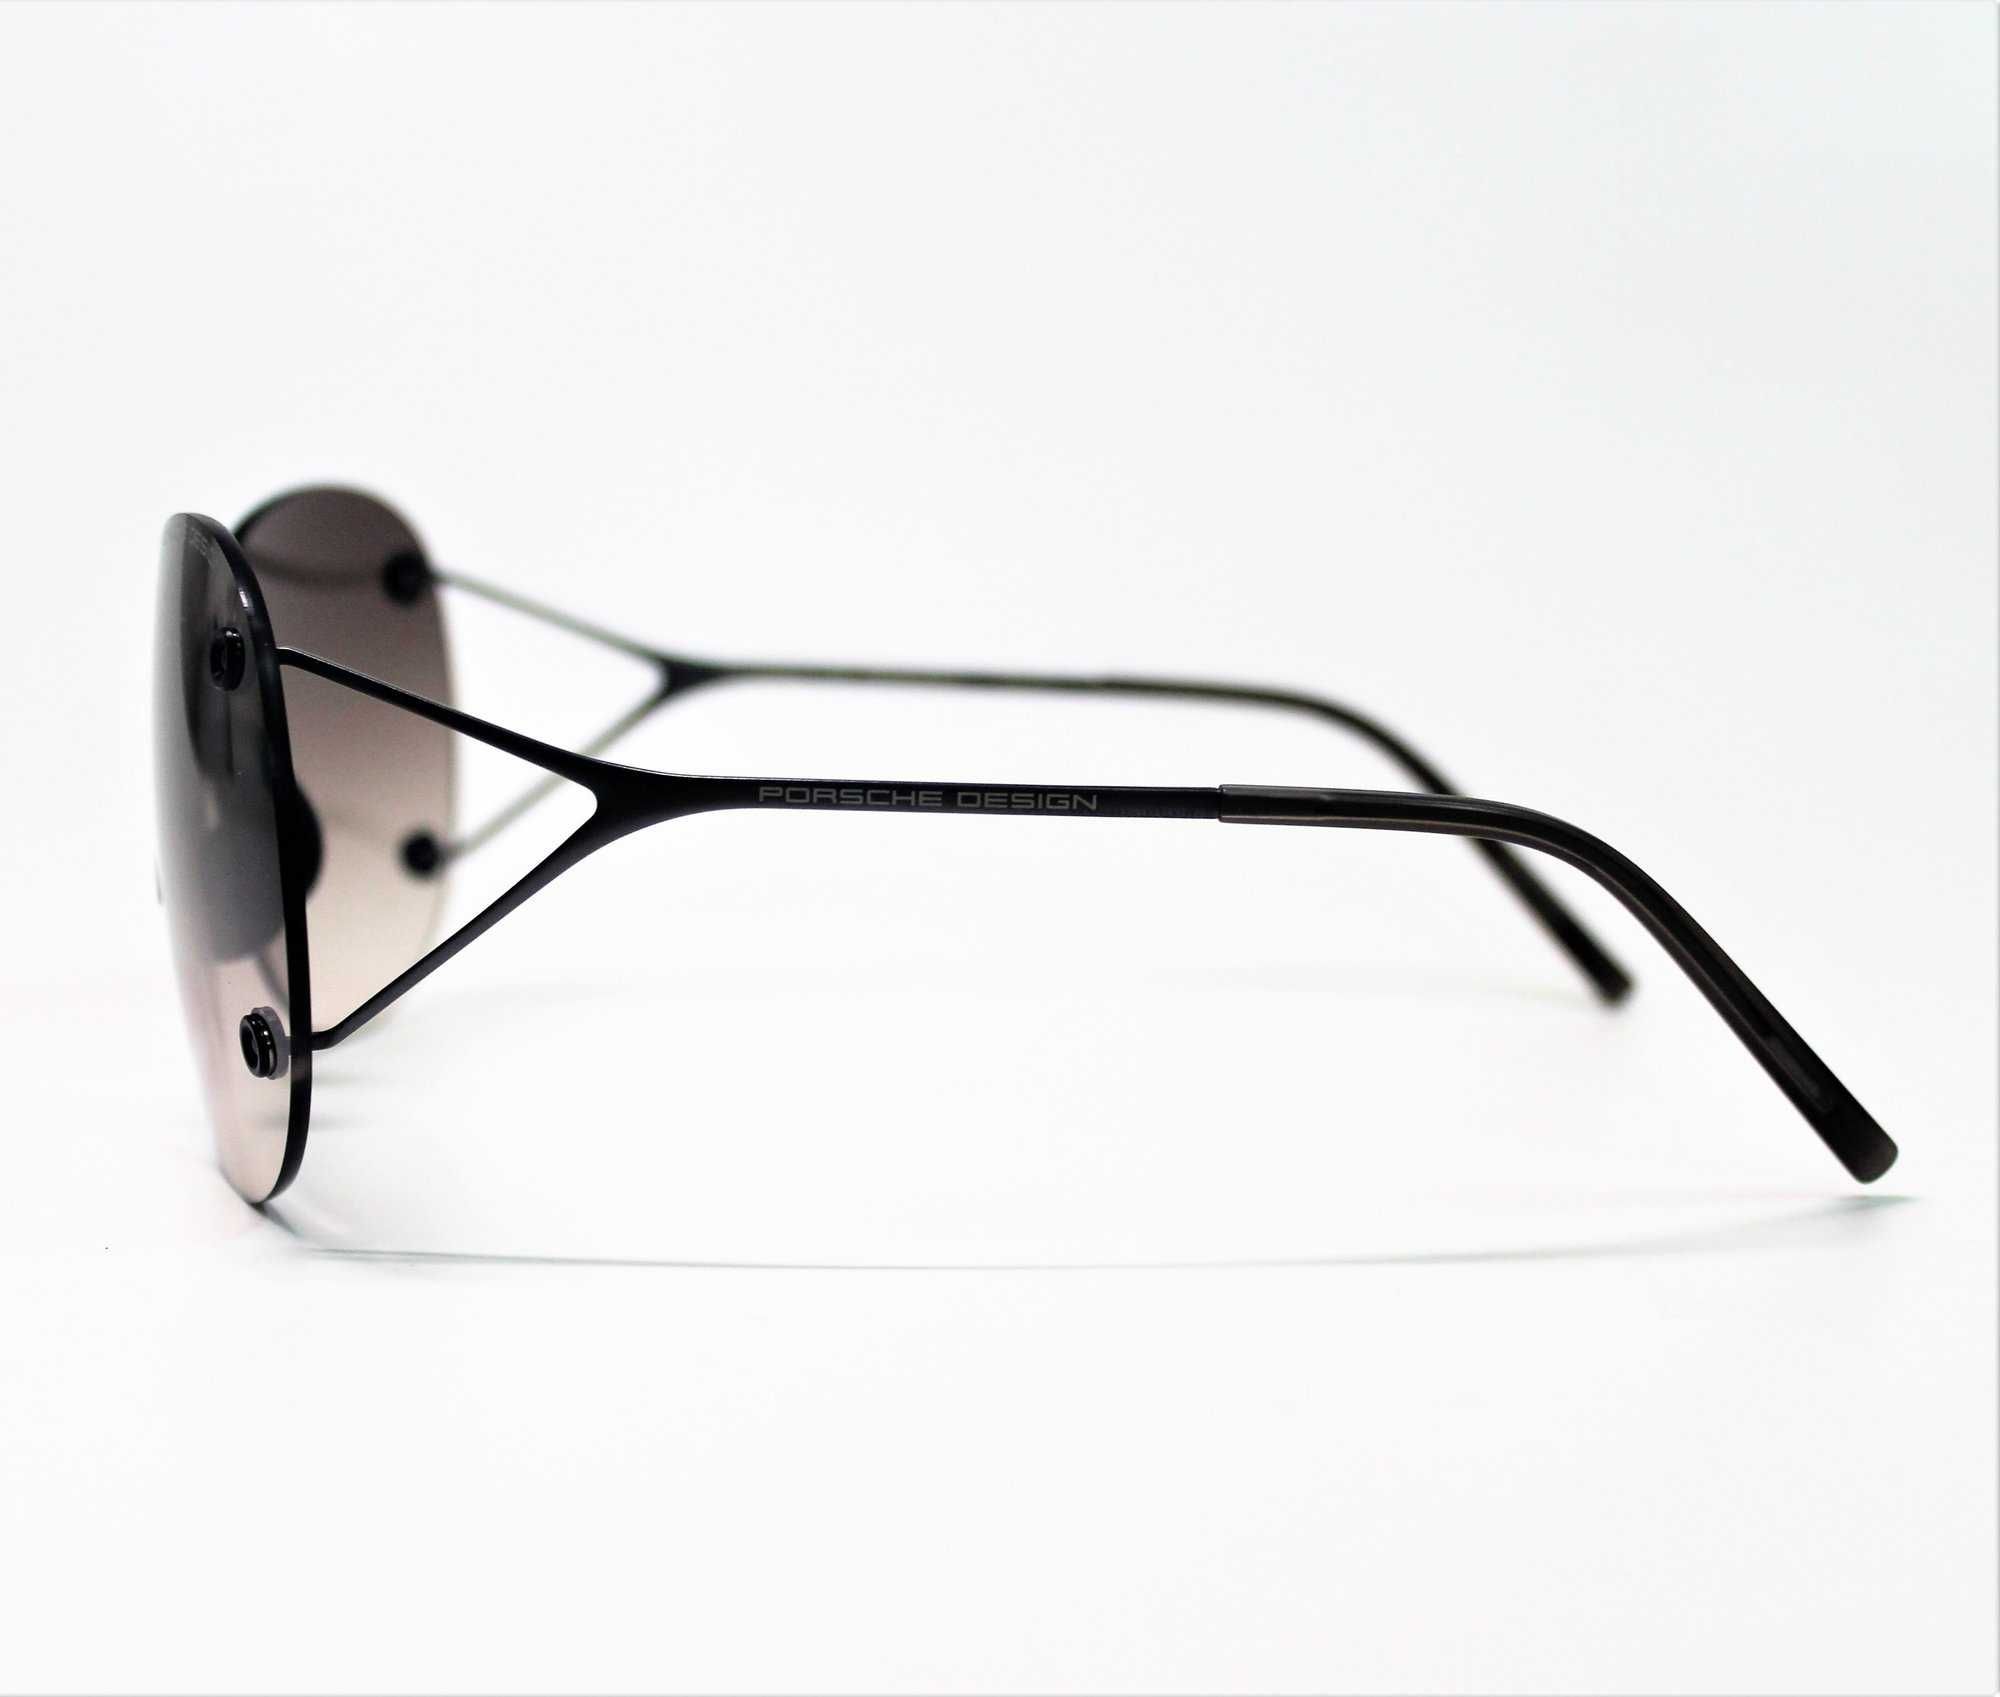 Оригинални дамски слънчеви очила Porsche Design Titanium -55%